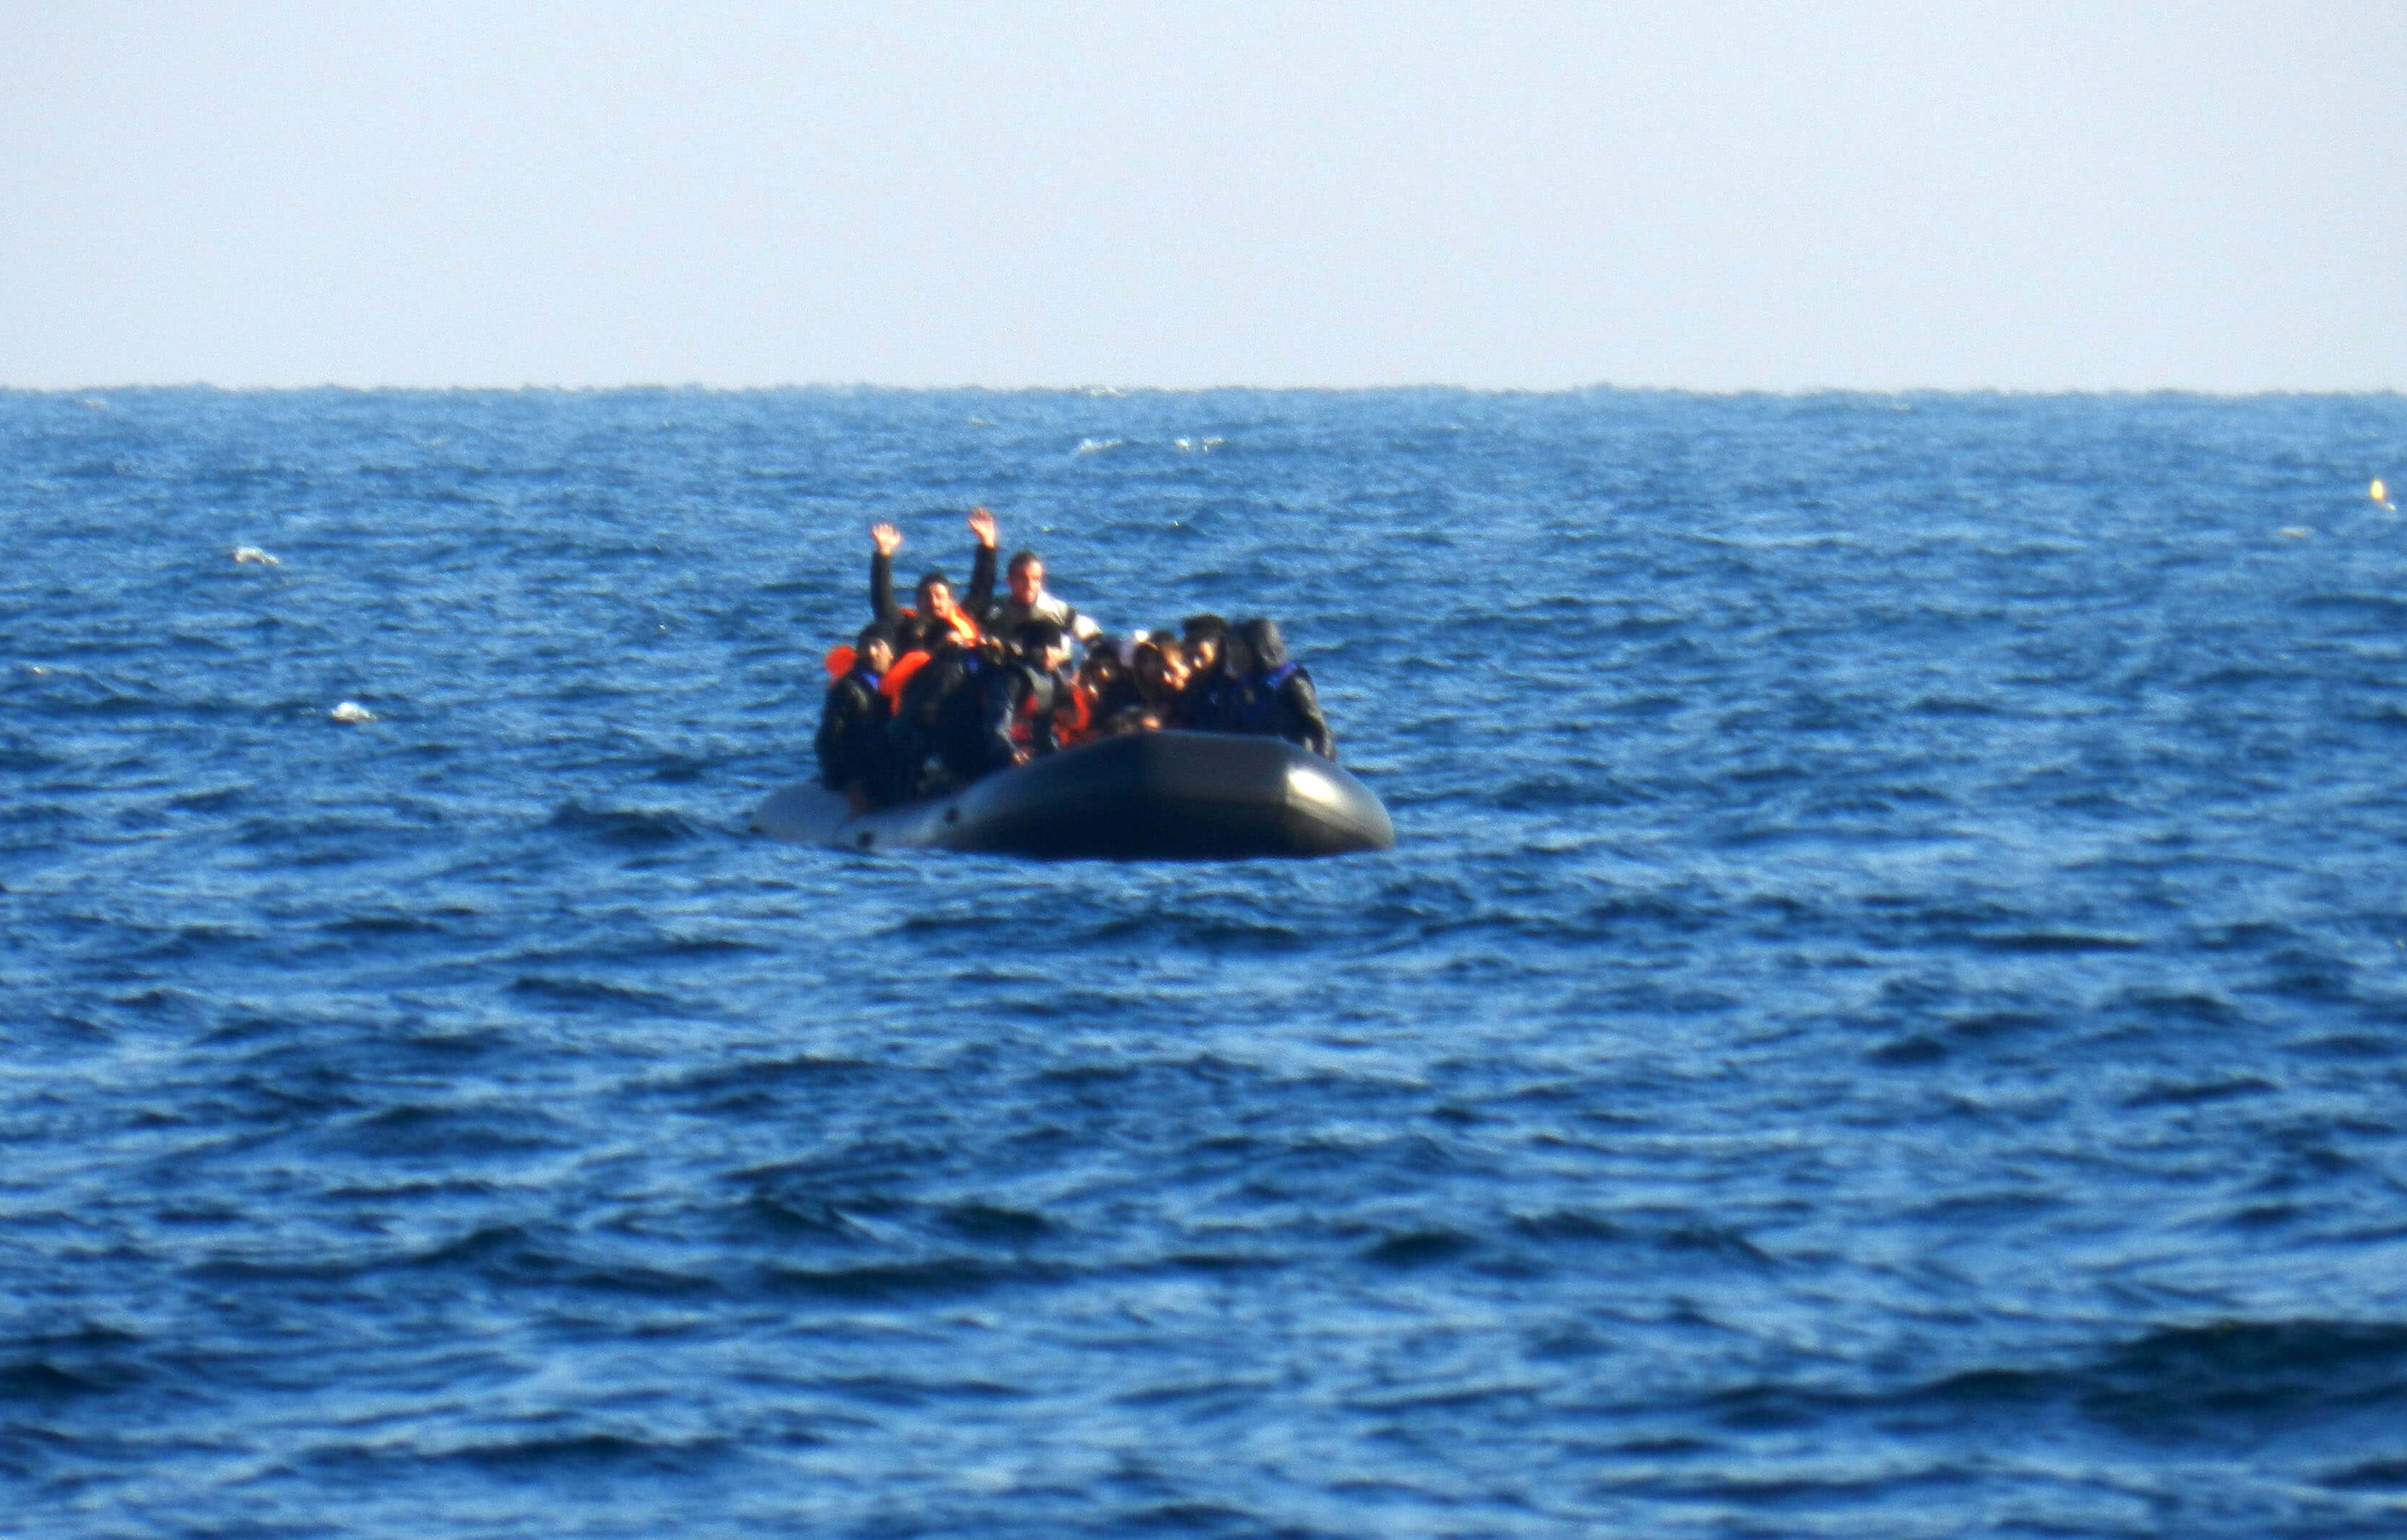 Αλεξανδρούπολη: Θρίλερ για τον εντοπισμό βάρκας με μετανάστες – Τηλεφώνησαν μεσοπέλαγα για βοήθεια!